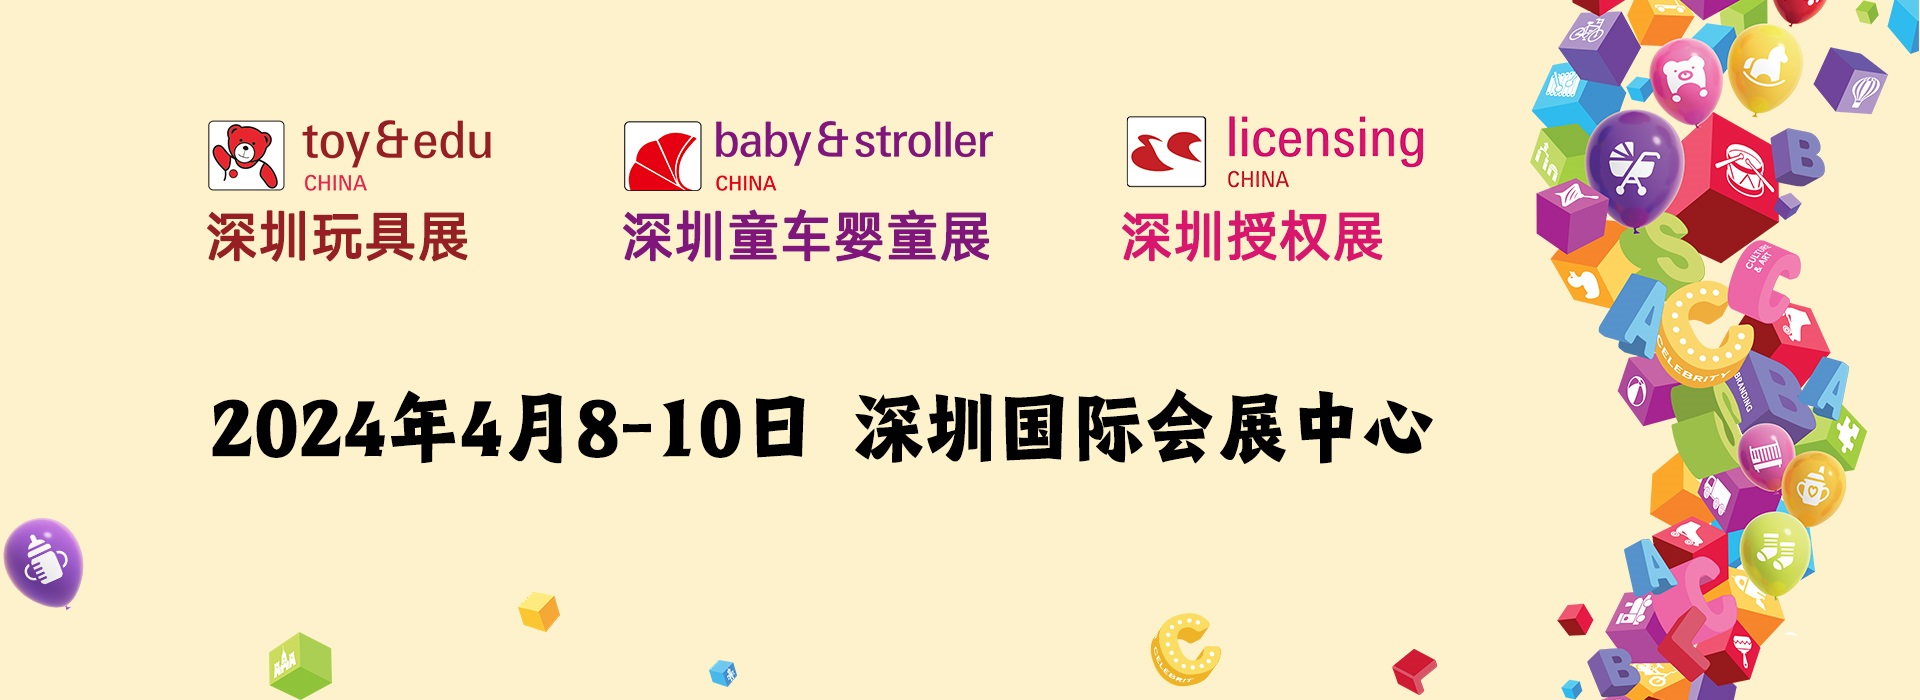 第 15 届国际童车及母婴童用品（深圳）展览会